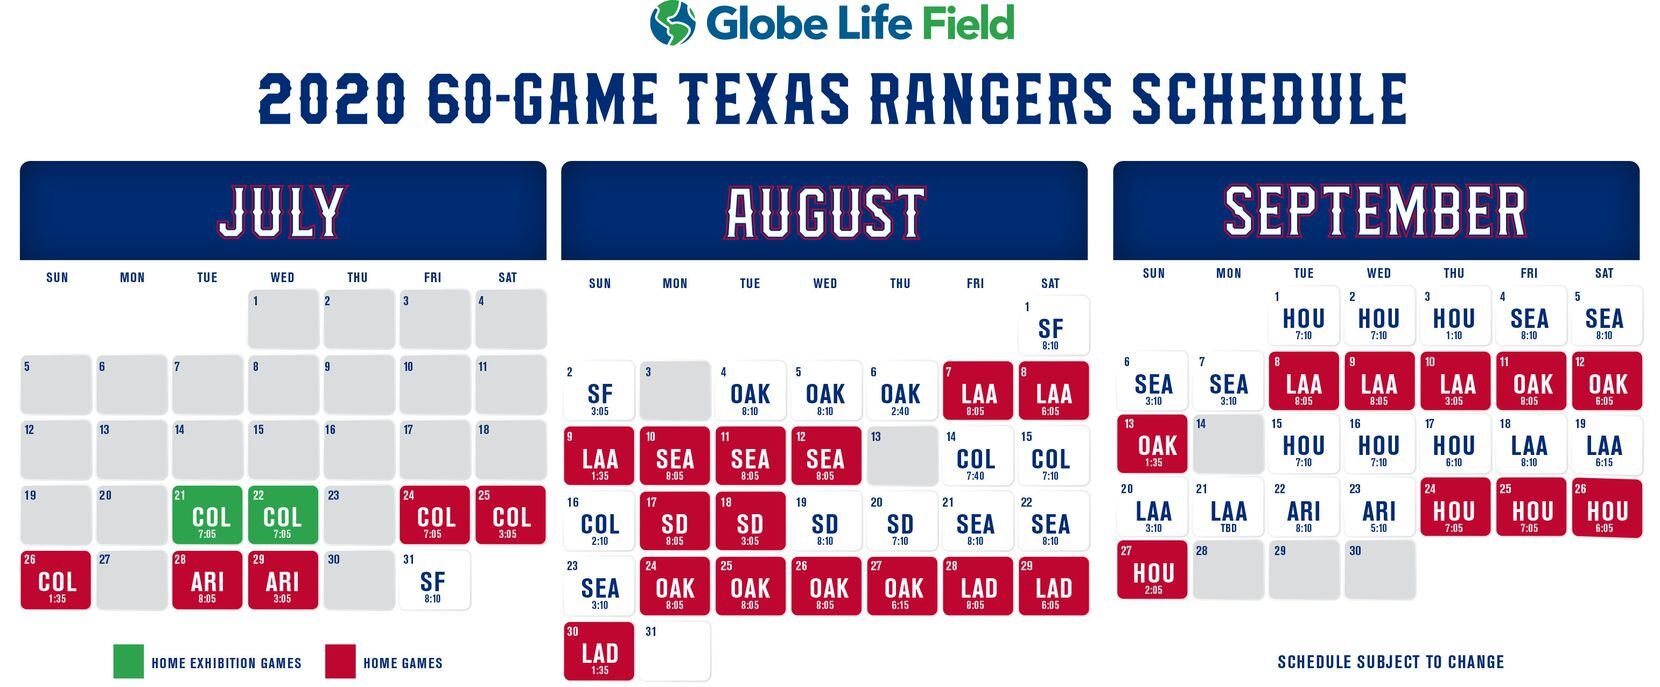 The Texas Rangers' 2020 schedule.